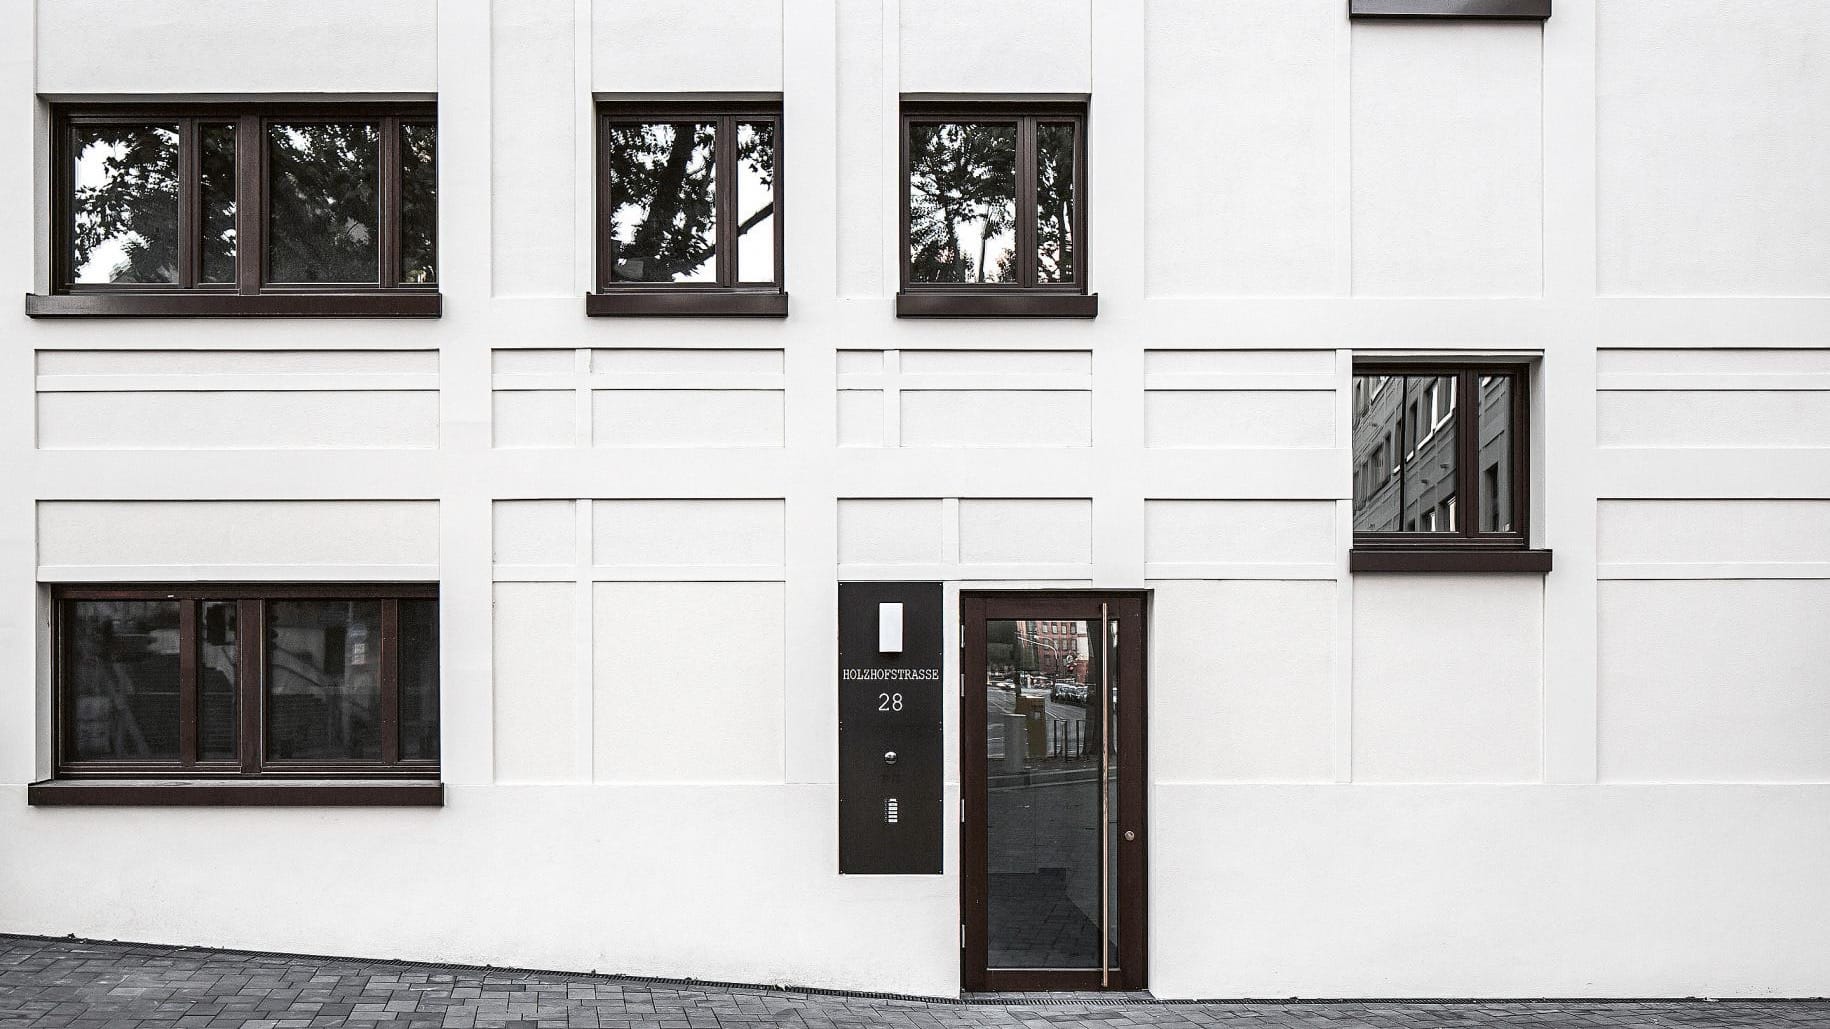 Wohn- und Geschäftshaus Hopfengarten in Mainz von Hild und K Architektur. Foto: Michael Heinrich